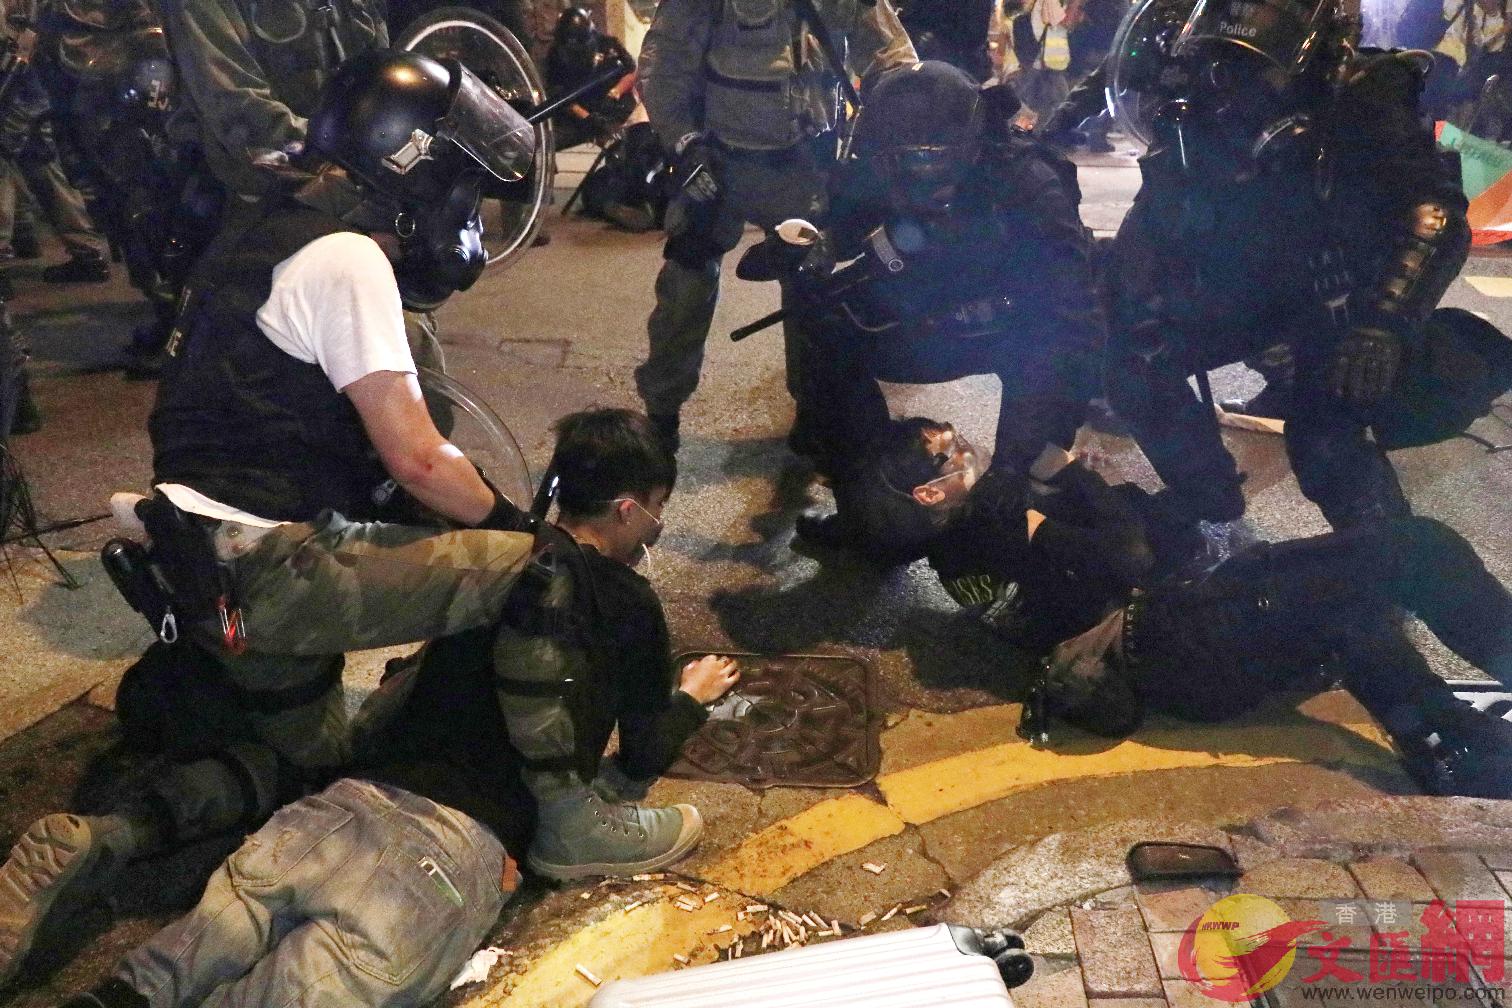 警方於當晚果斷執法A即場拘捕多名暴徒]香港文匯報圖^